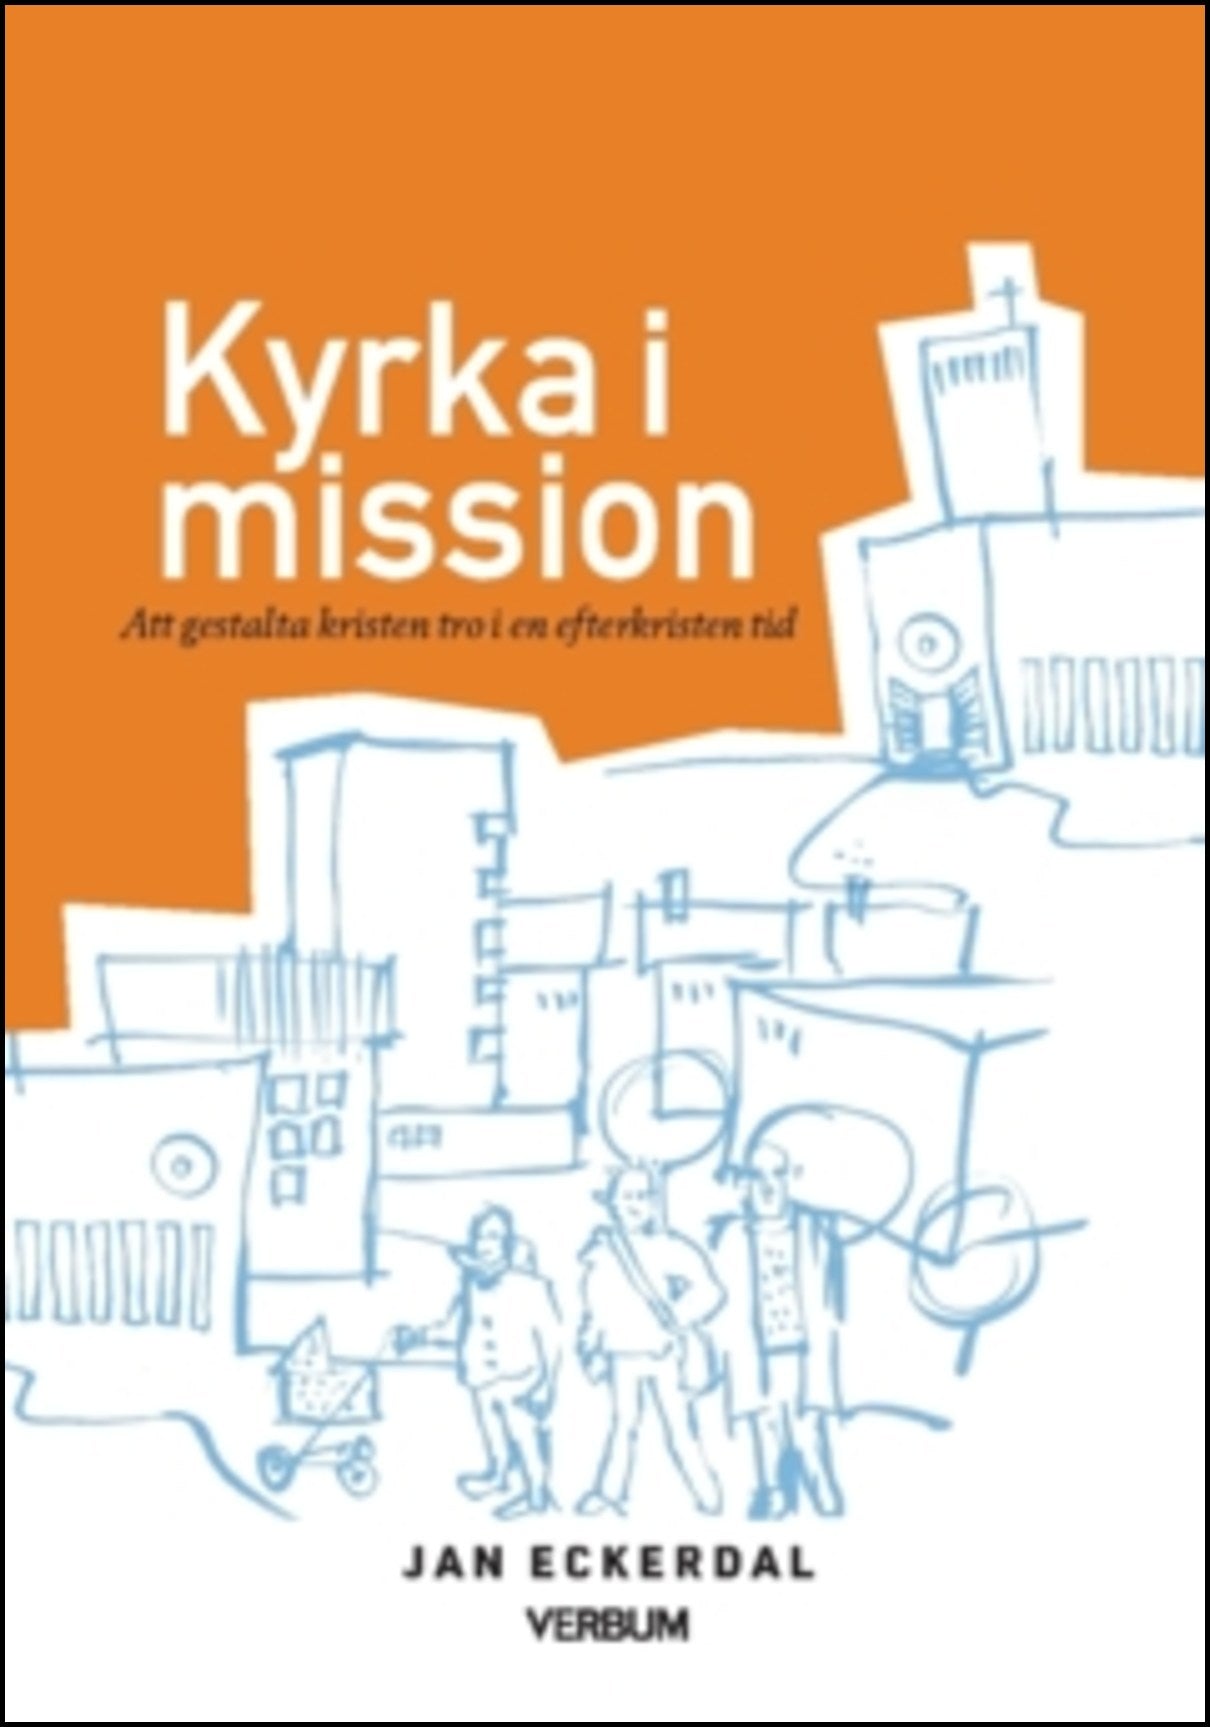 Eckerdal, Jan | Kyrka i mission : Att gestalta kristen tro i en efterkristen tid